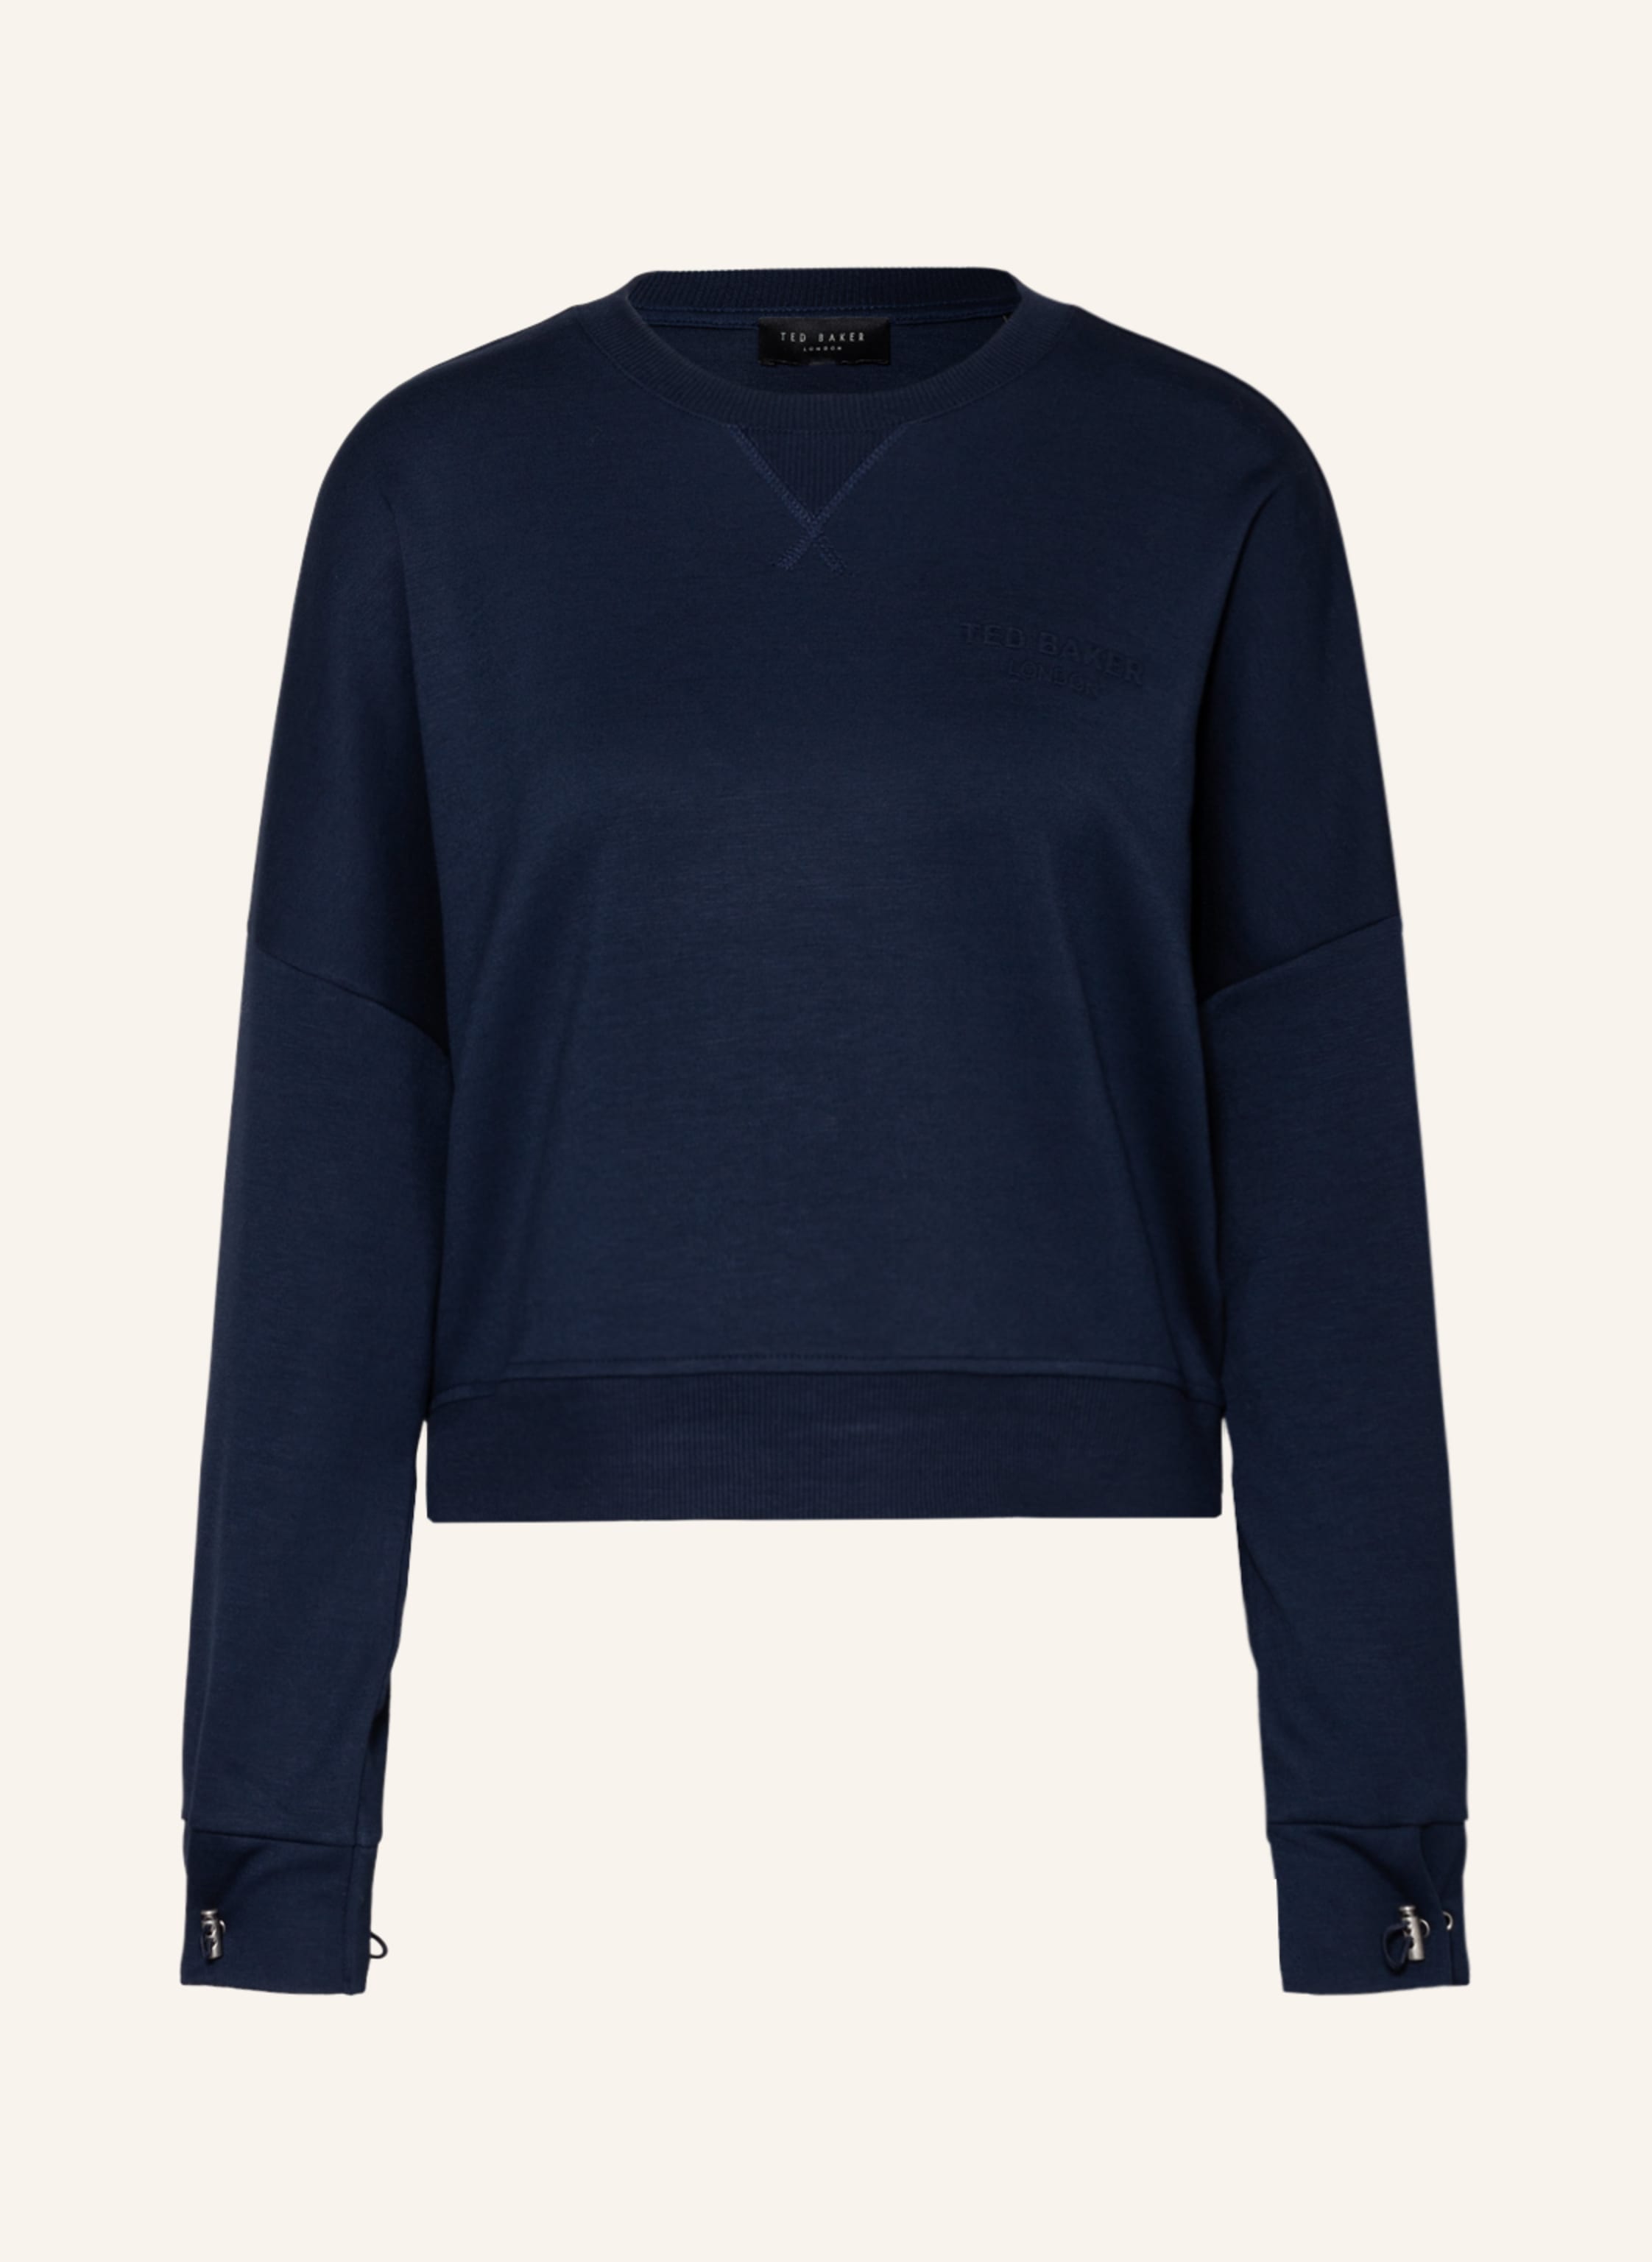 TED BAKER Sweatshirt ORIETTA in dark blue